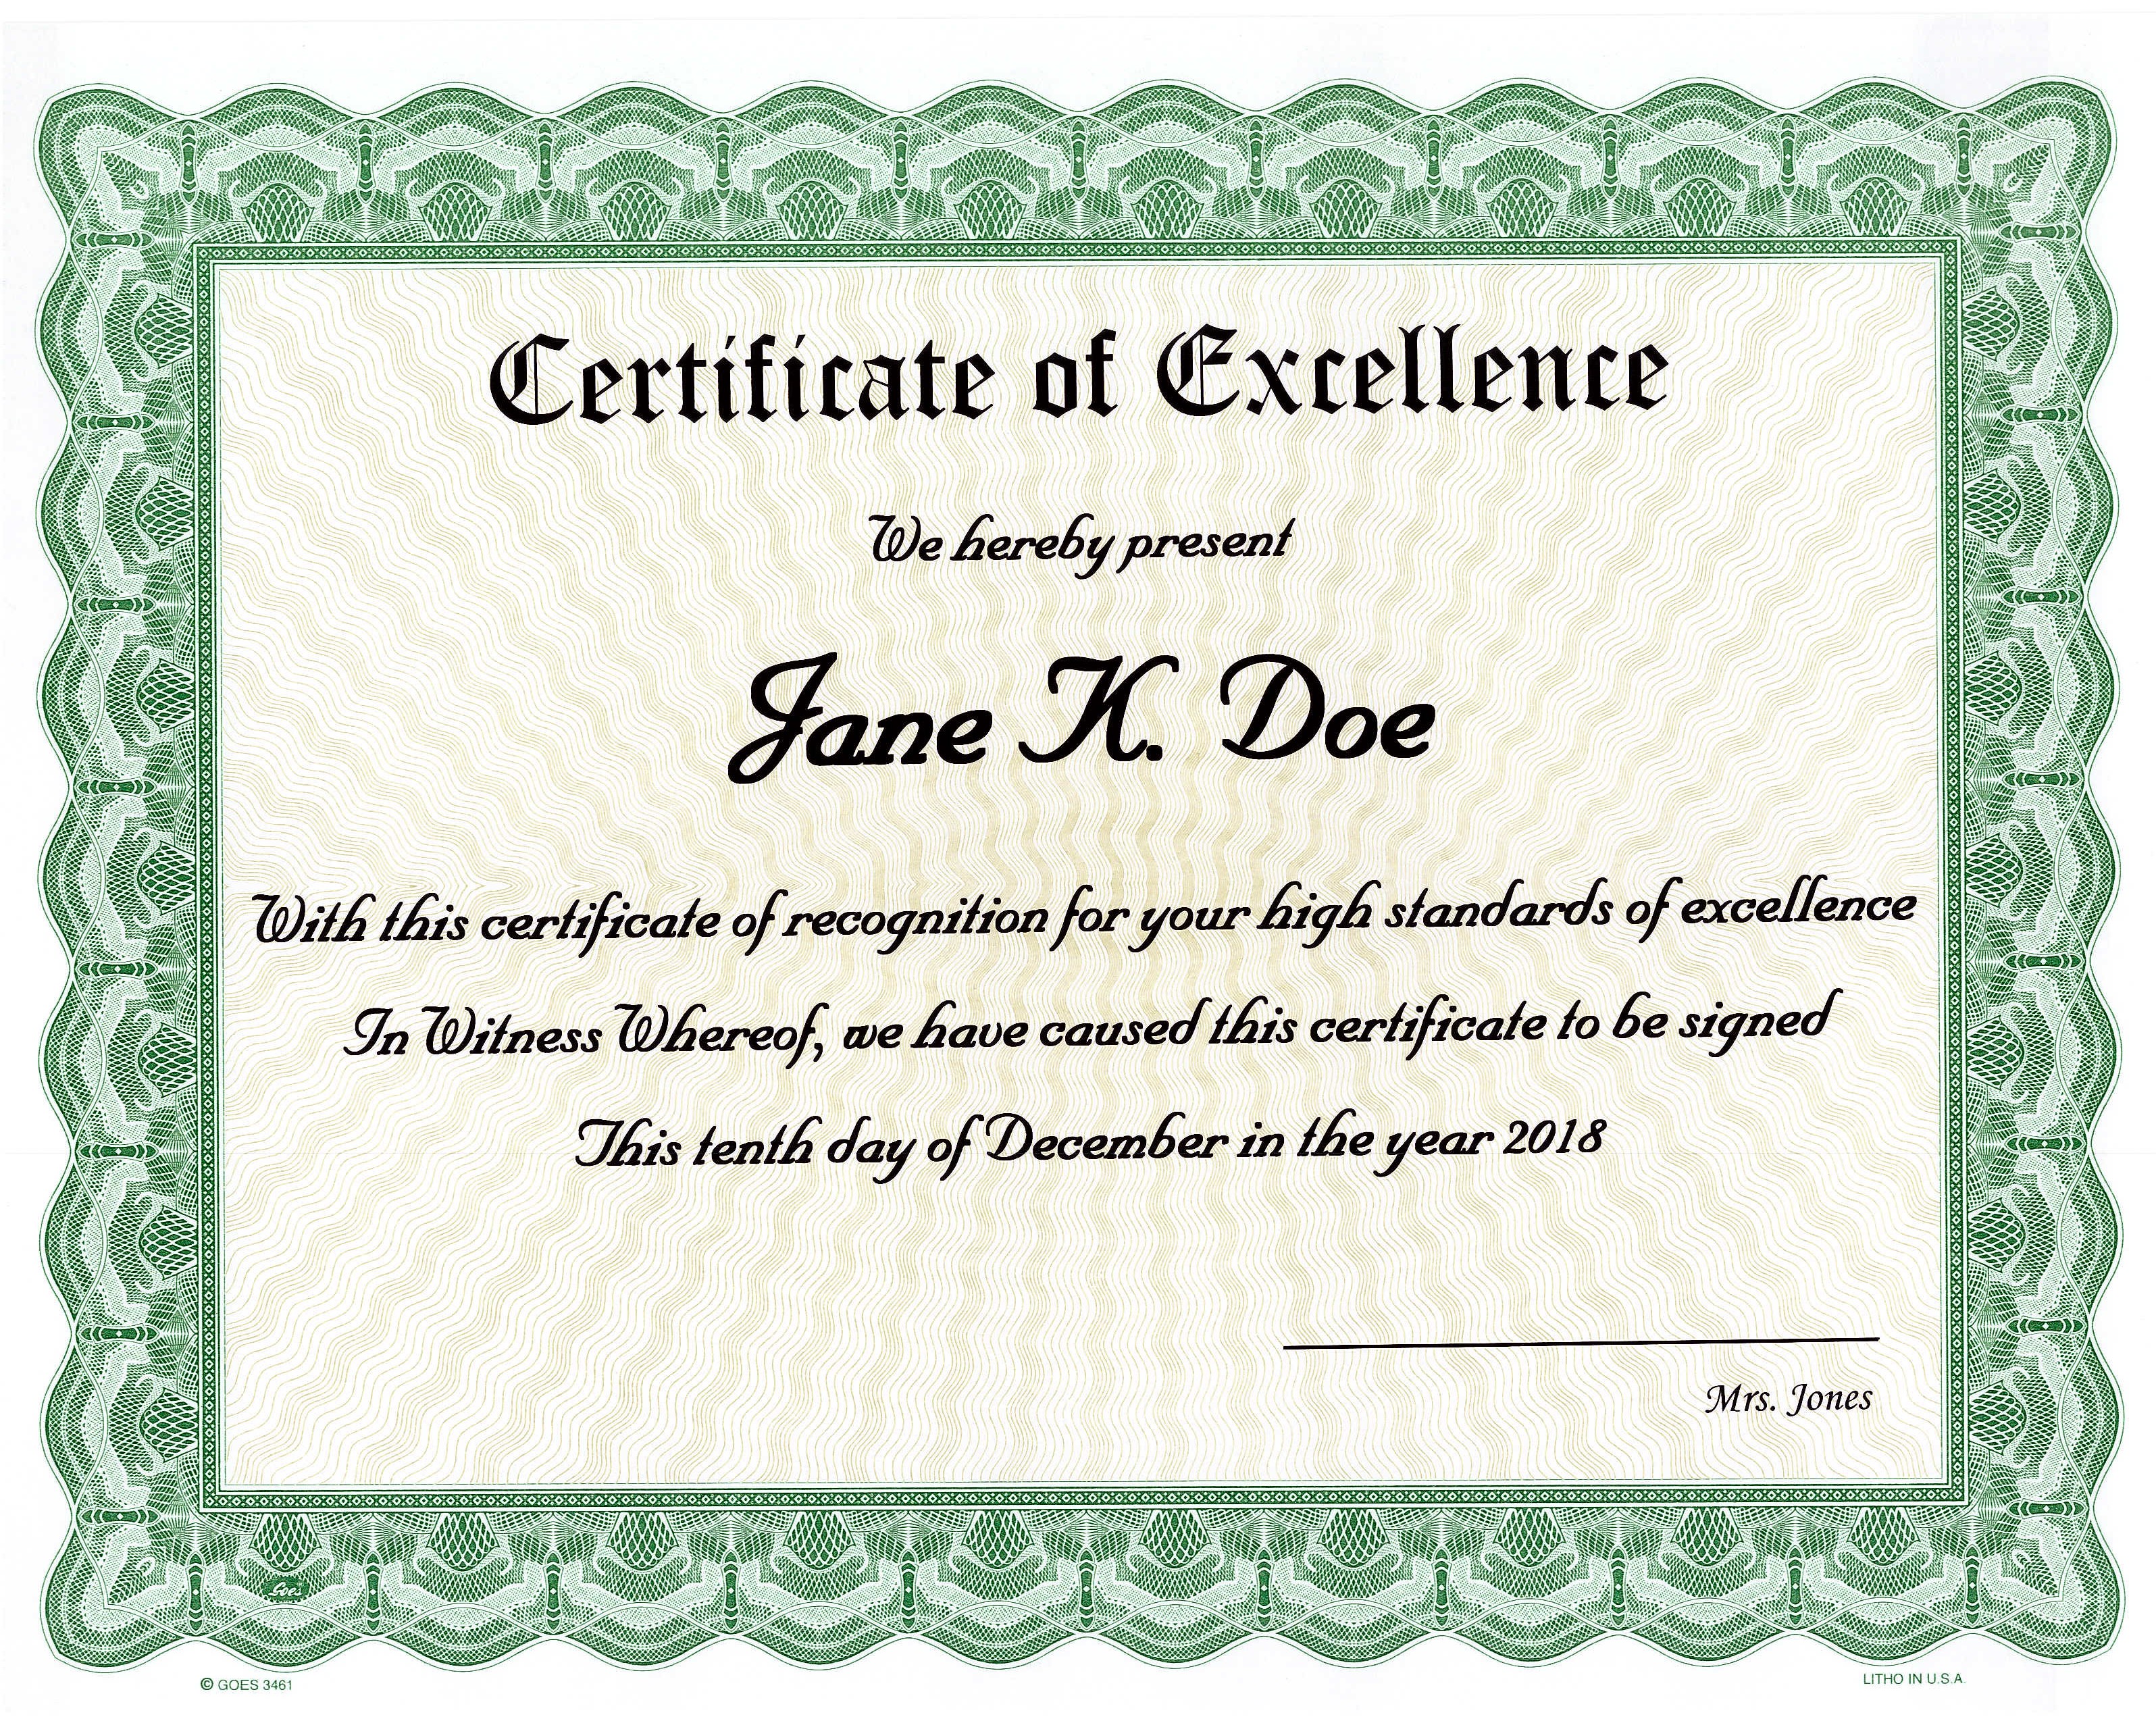 Award Certificate Printing, Certificate Printing